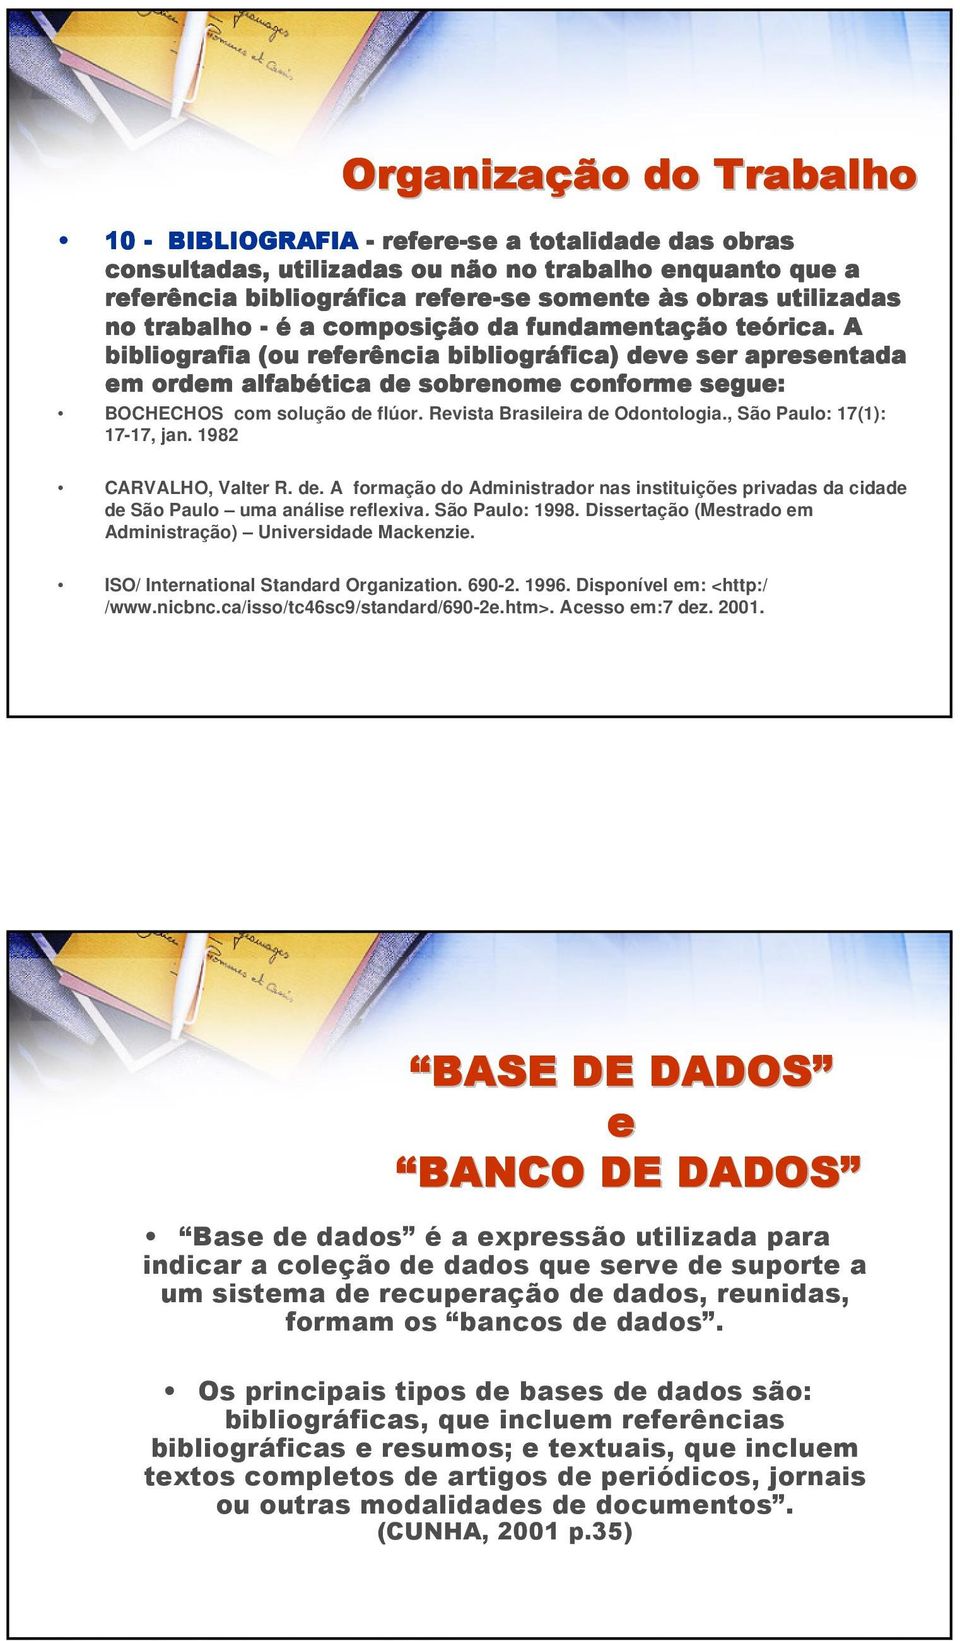 A bibliografia (ou referência bibliográfica) deve ser apresentada em ordem alfabética de sobrenome conforme segue: BOCHECHOS com solução de flúor. Revista Brasileira de Odontologia.